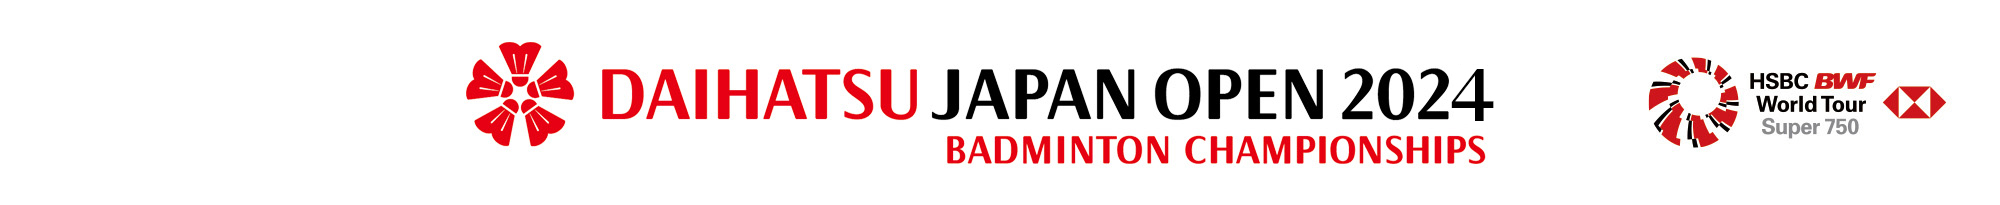 ダイハツジャパンオープン2024　公式サイト　DAIHATSU JAPAN OPEN 2024 Part of HSBC BWF World Tour Super 750  Official Web Site